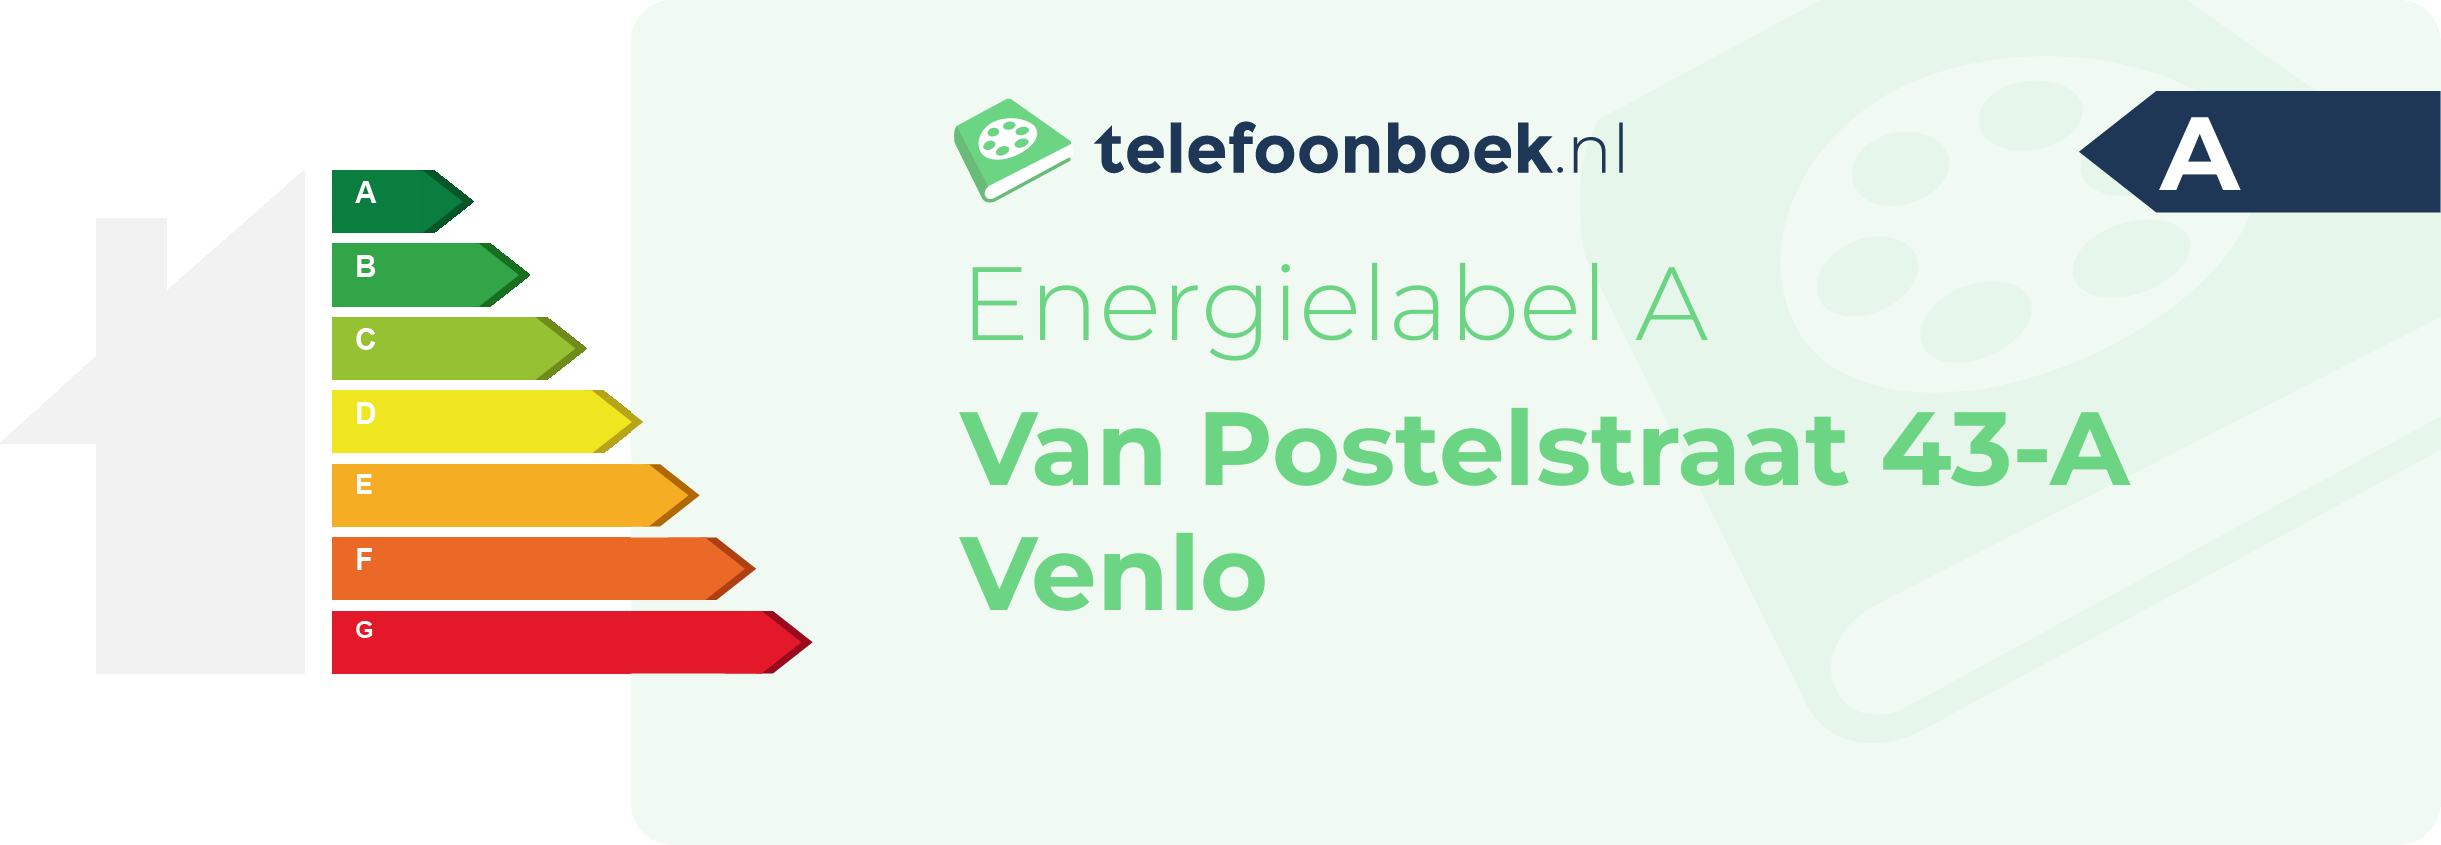 Energielabel Van Postelstraat 43-A Venlo